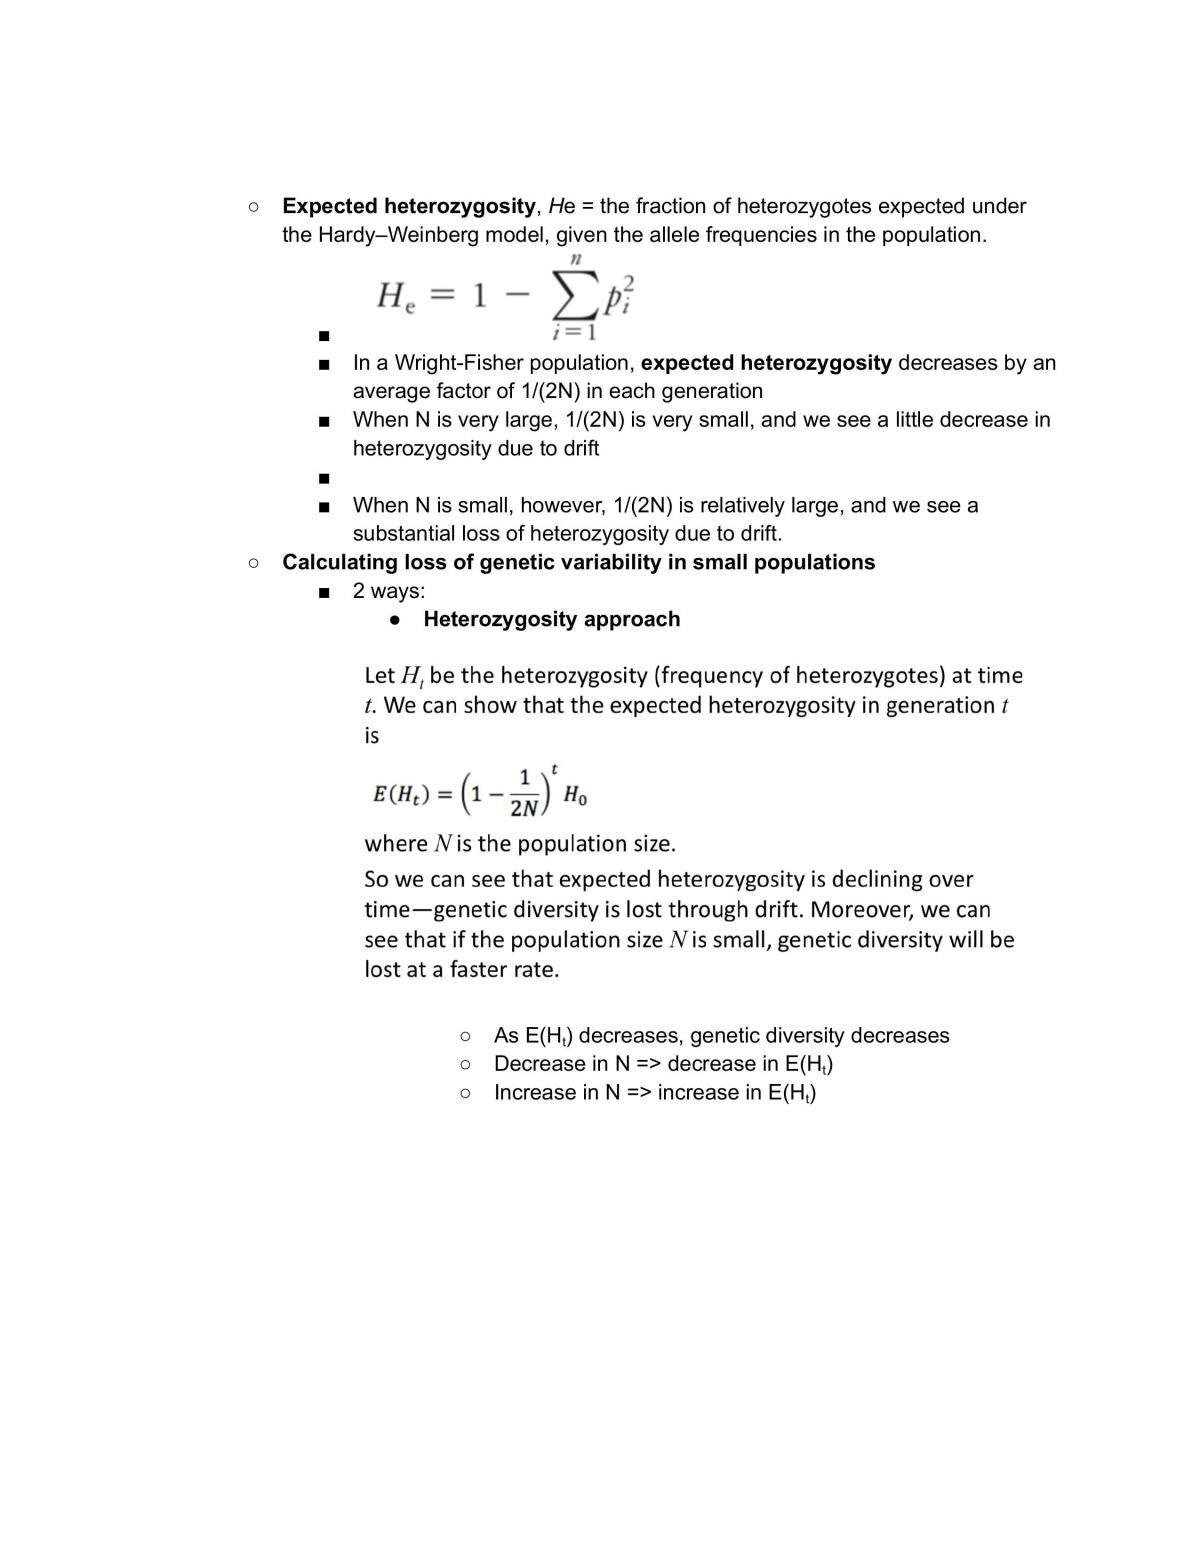 Lsm22107/lsm1105 Evolutionary Biology Compiled Notes - Page 41